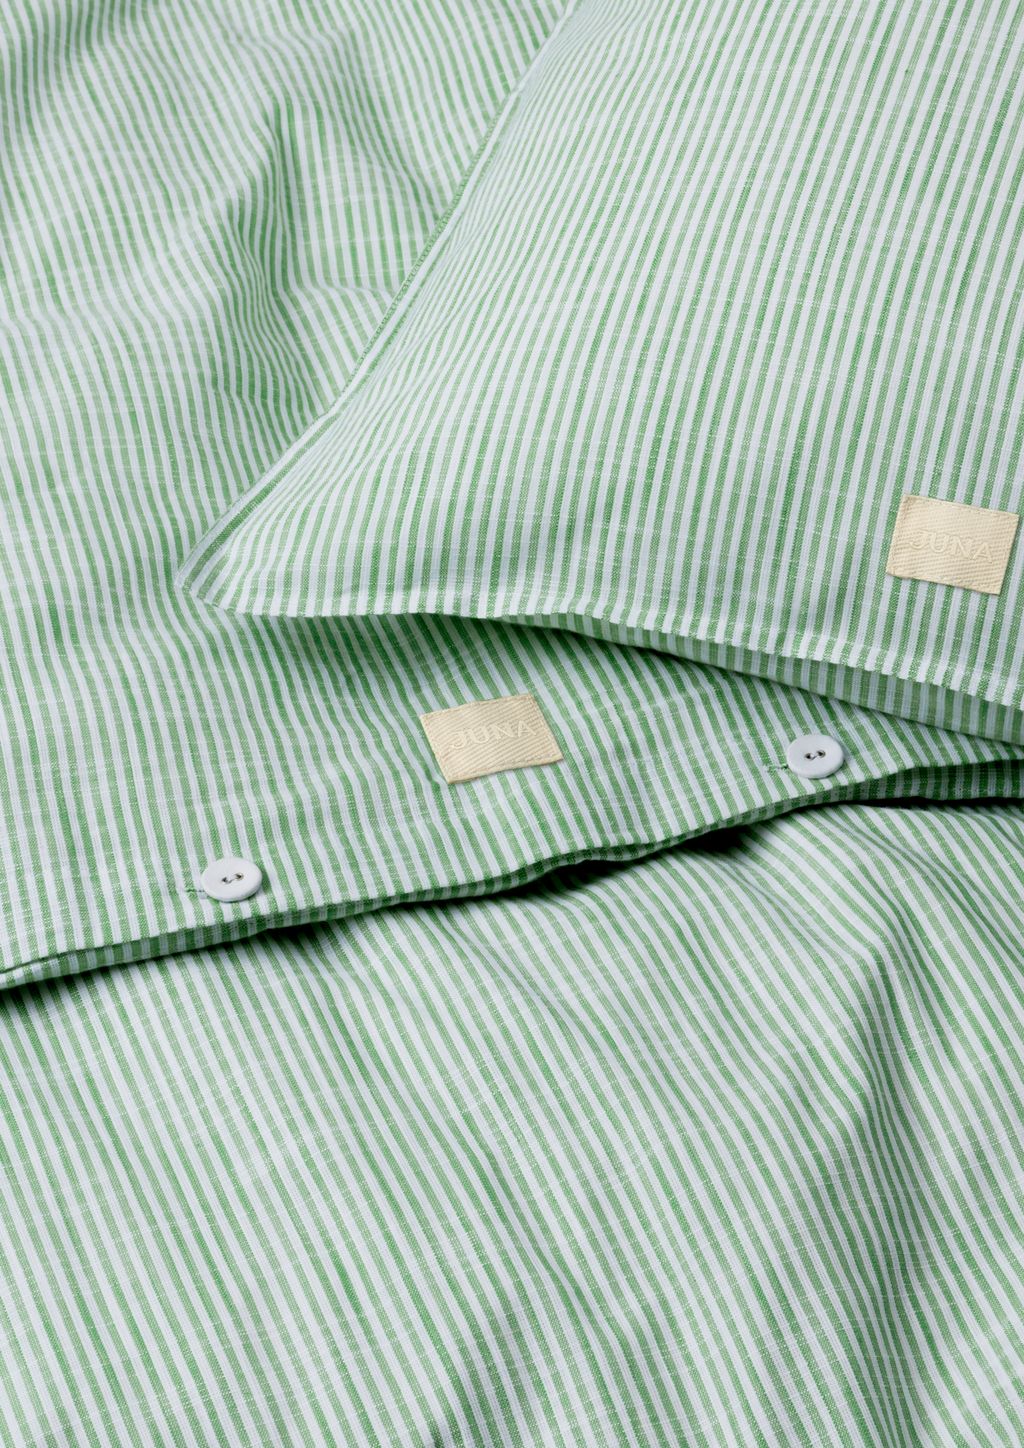 Juna Monochrome Lines Bed Bed 200 x220 cm, zielony/biały